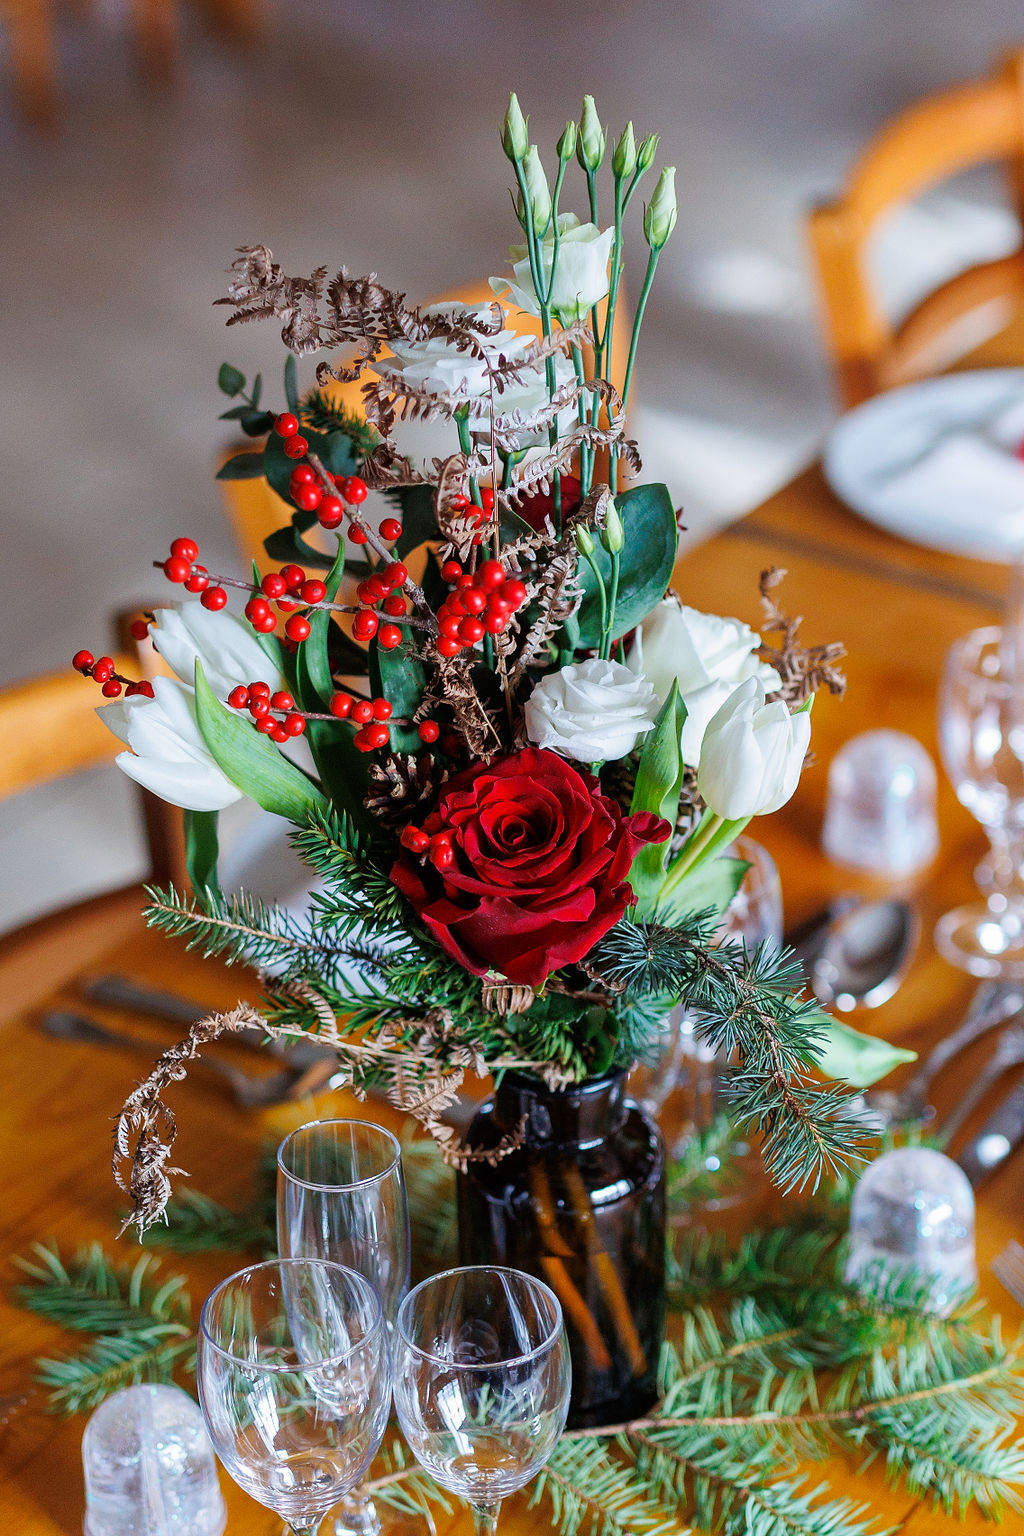 Décoration de table, avec des fleurs rouges et blanches